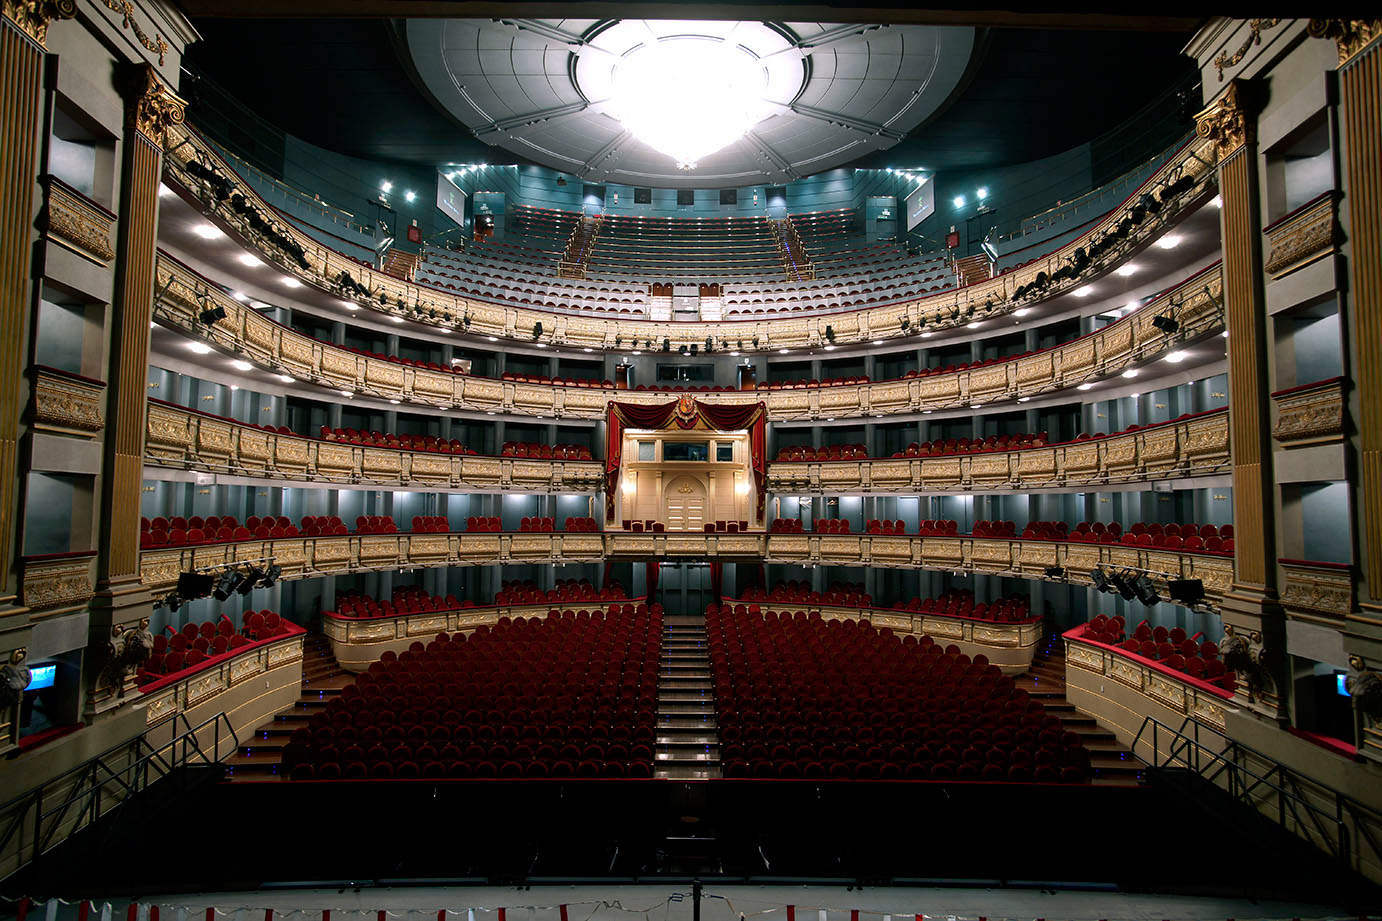 Visita el Edificio del Teatro Real | Teatro Real